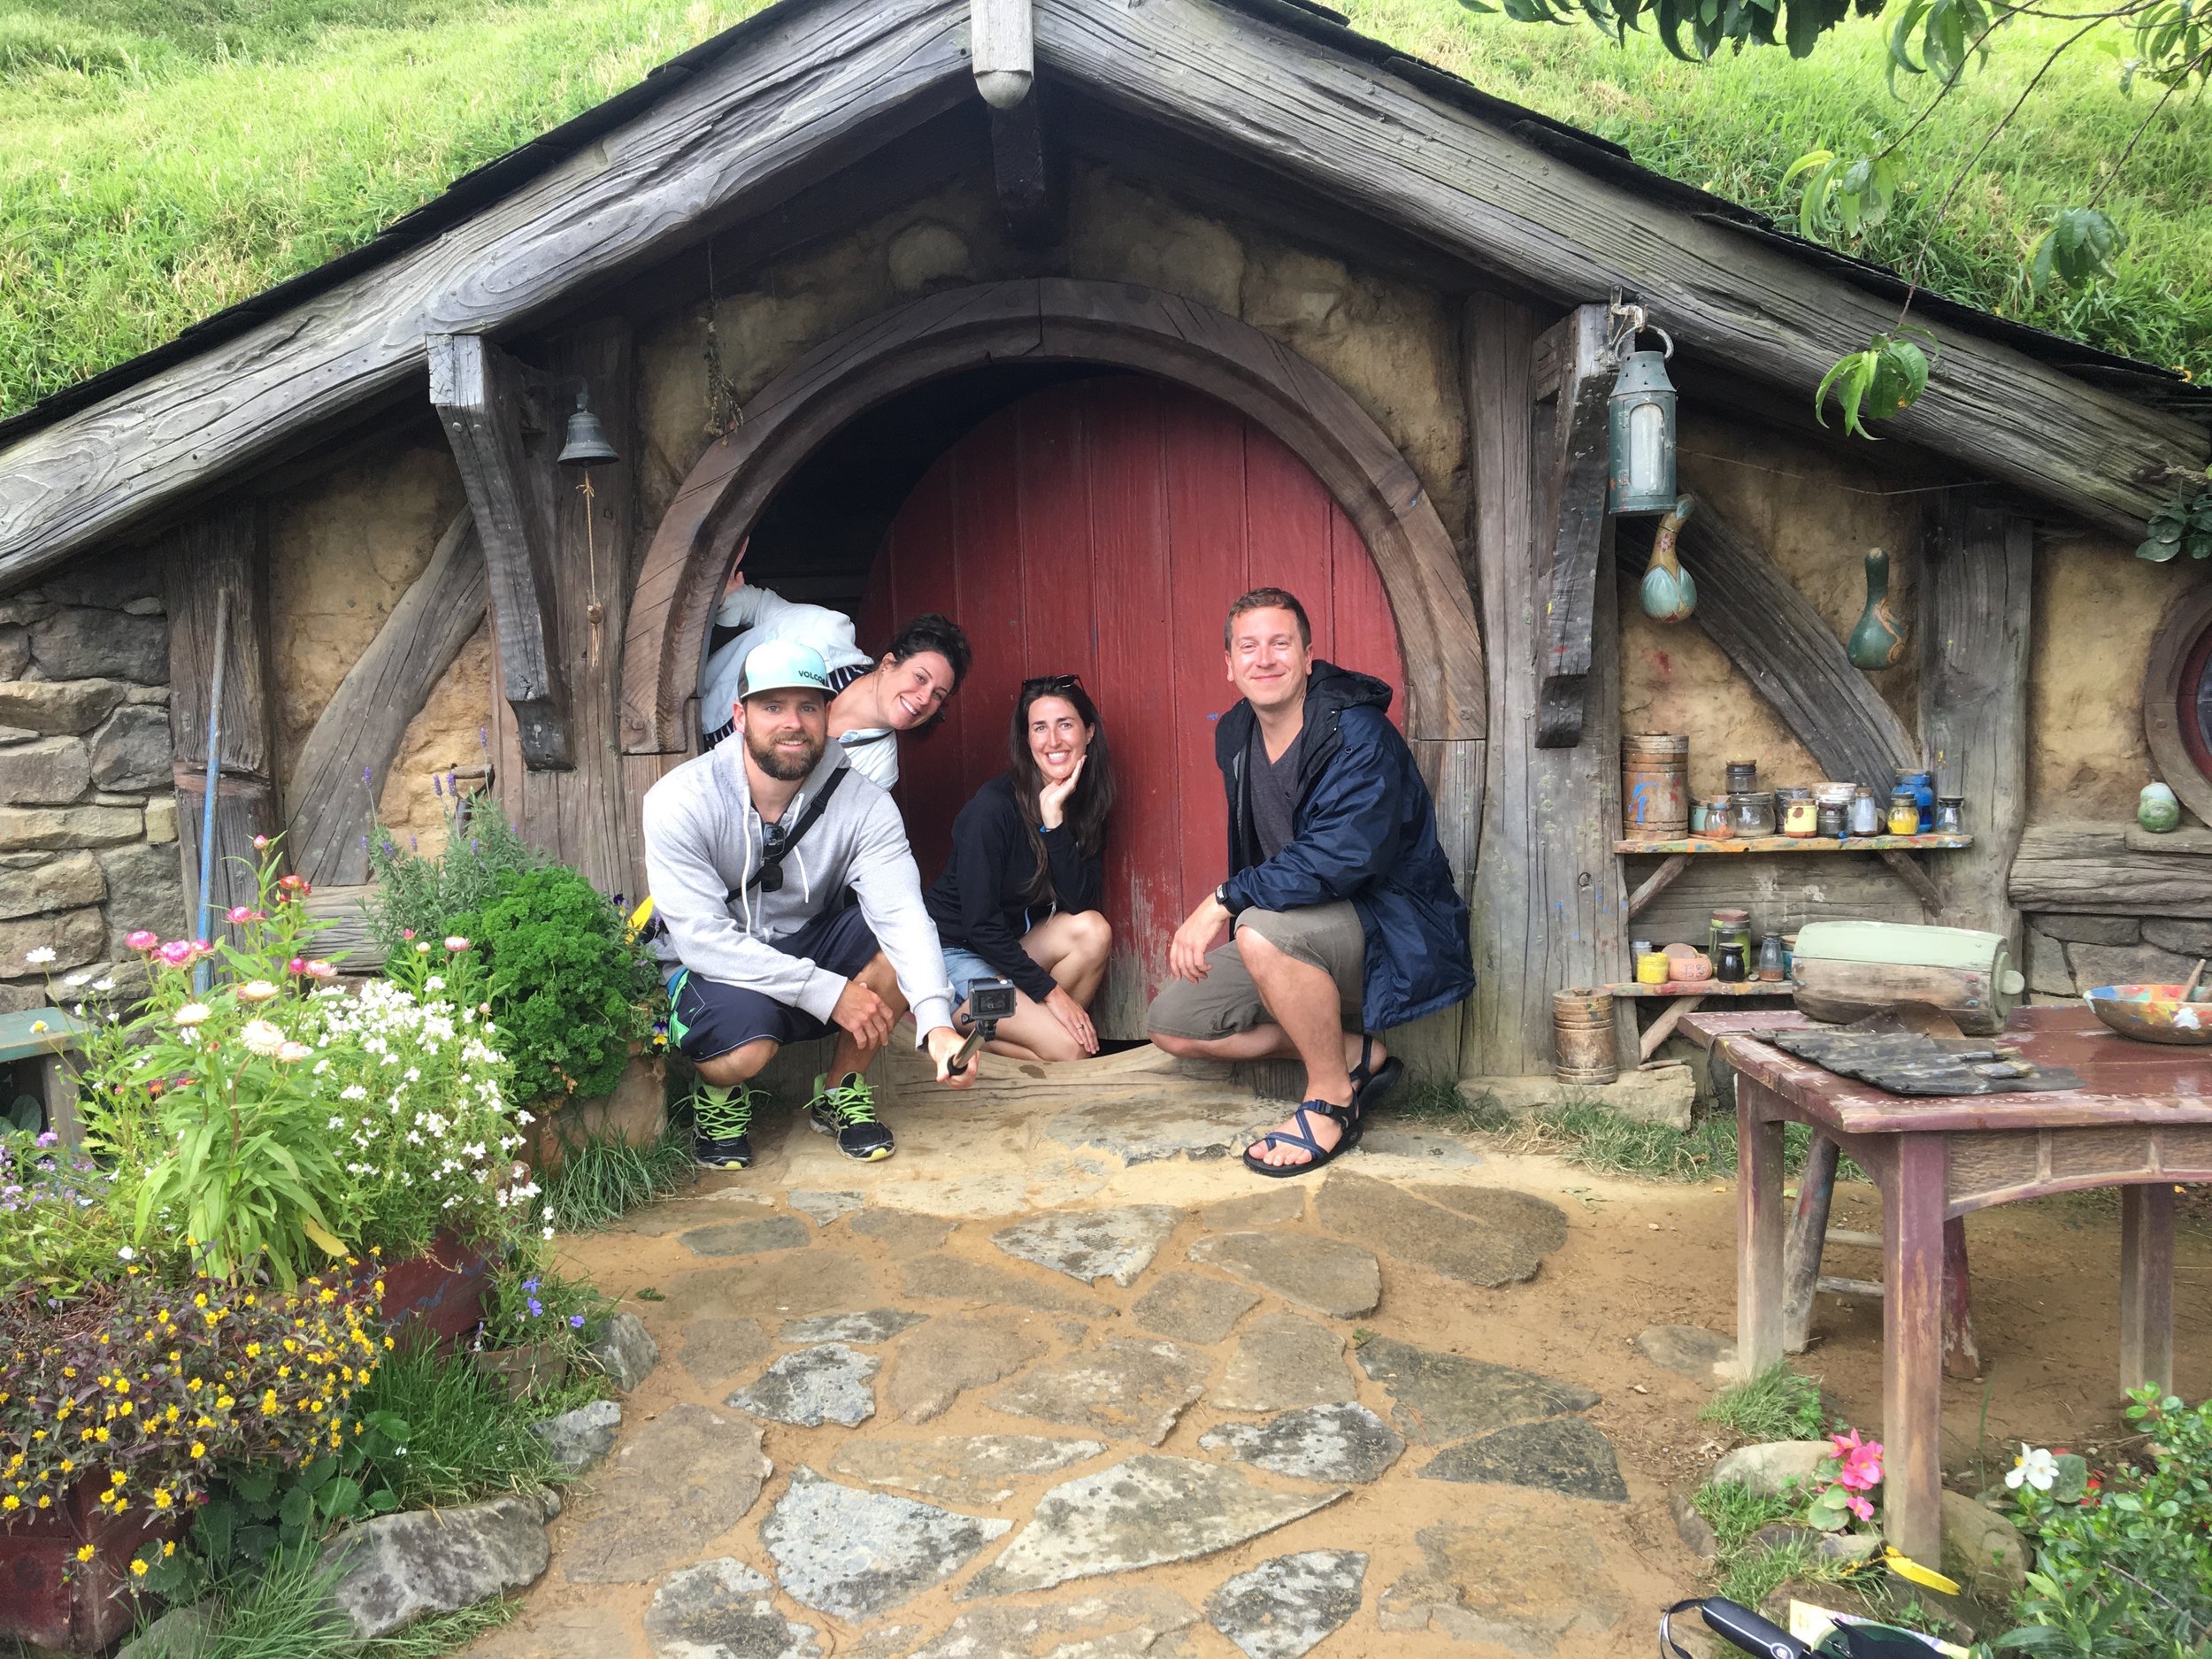   Hobbiton Movie Set, Matamata, Waikato Region  